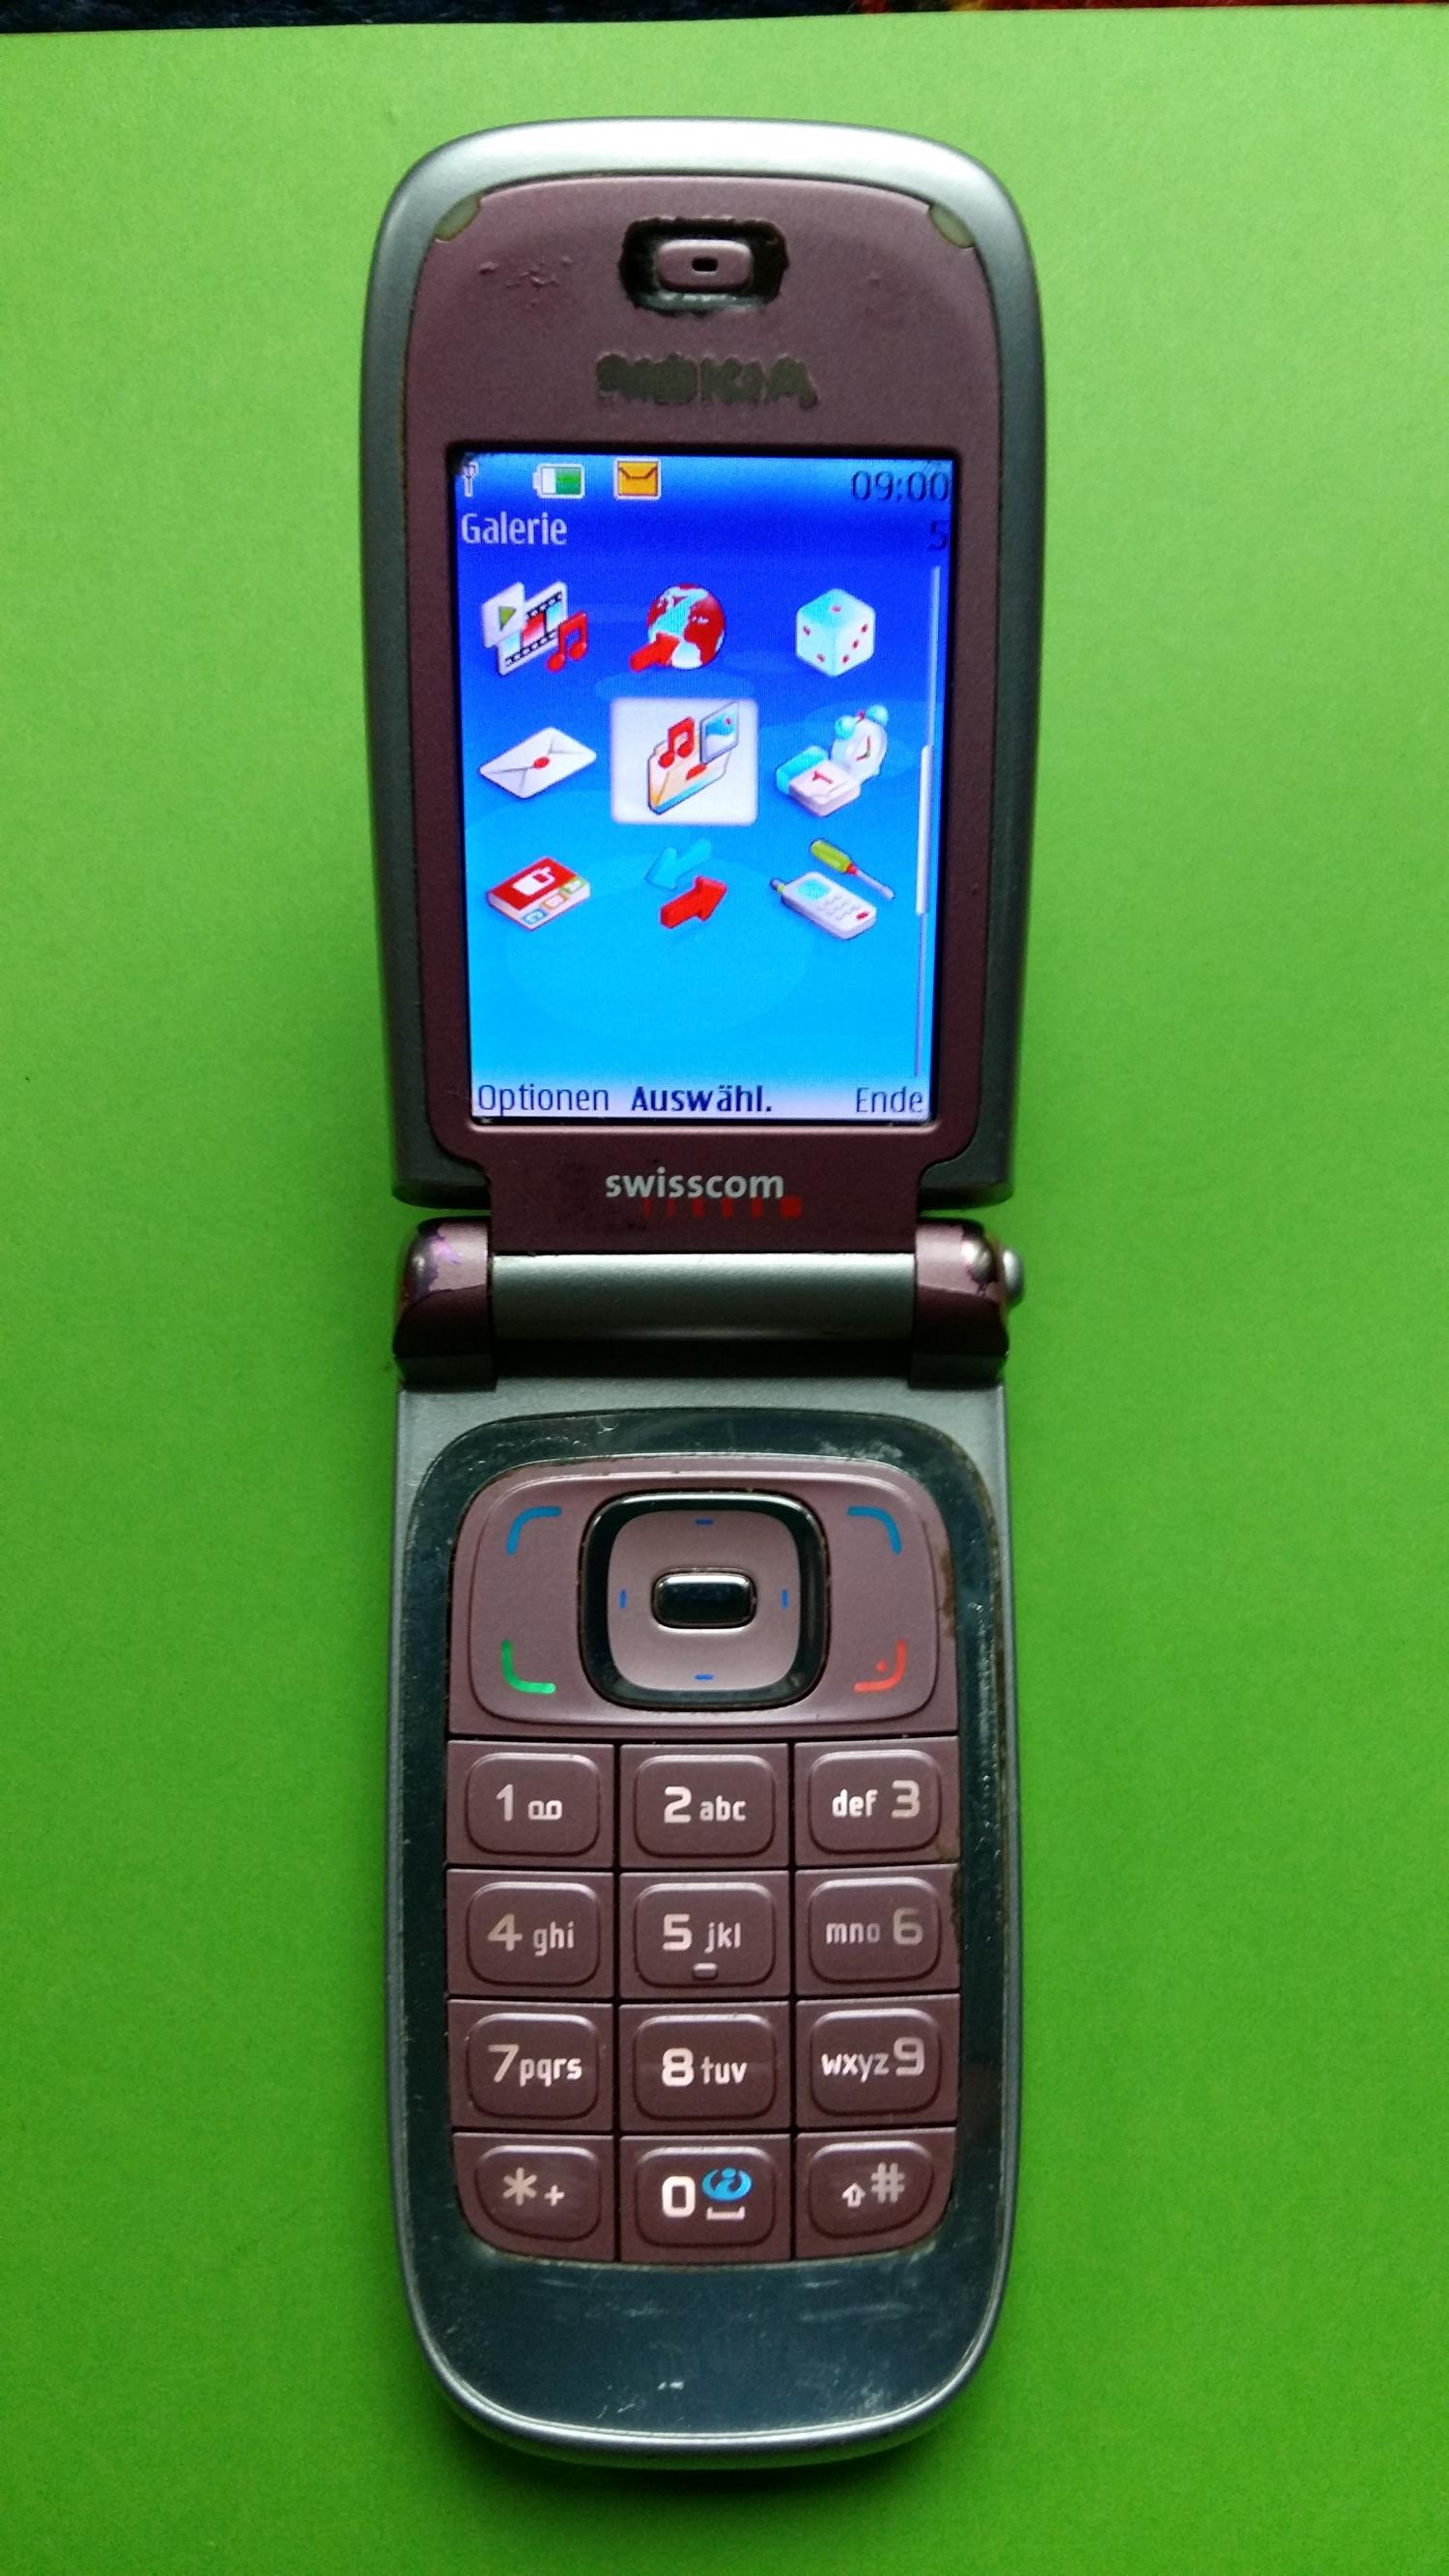 image-7305210-Nokia 6131 (6)2.jpg